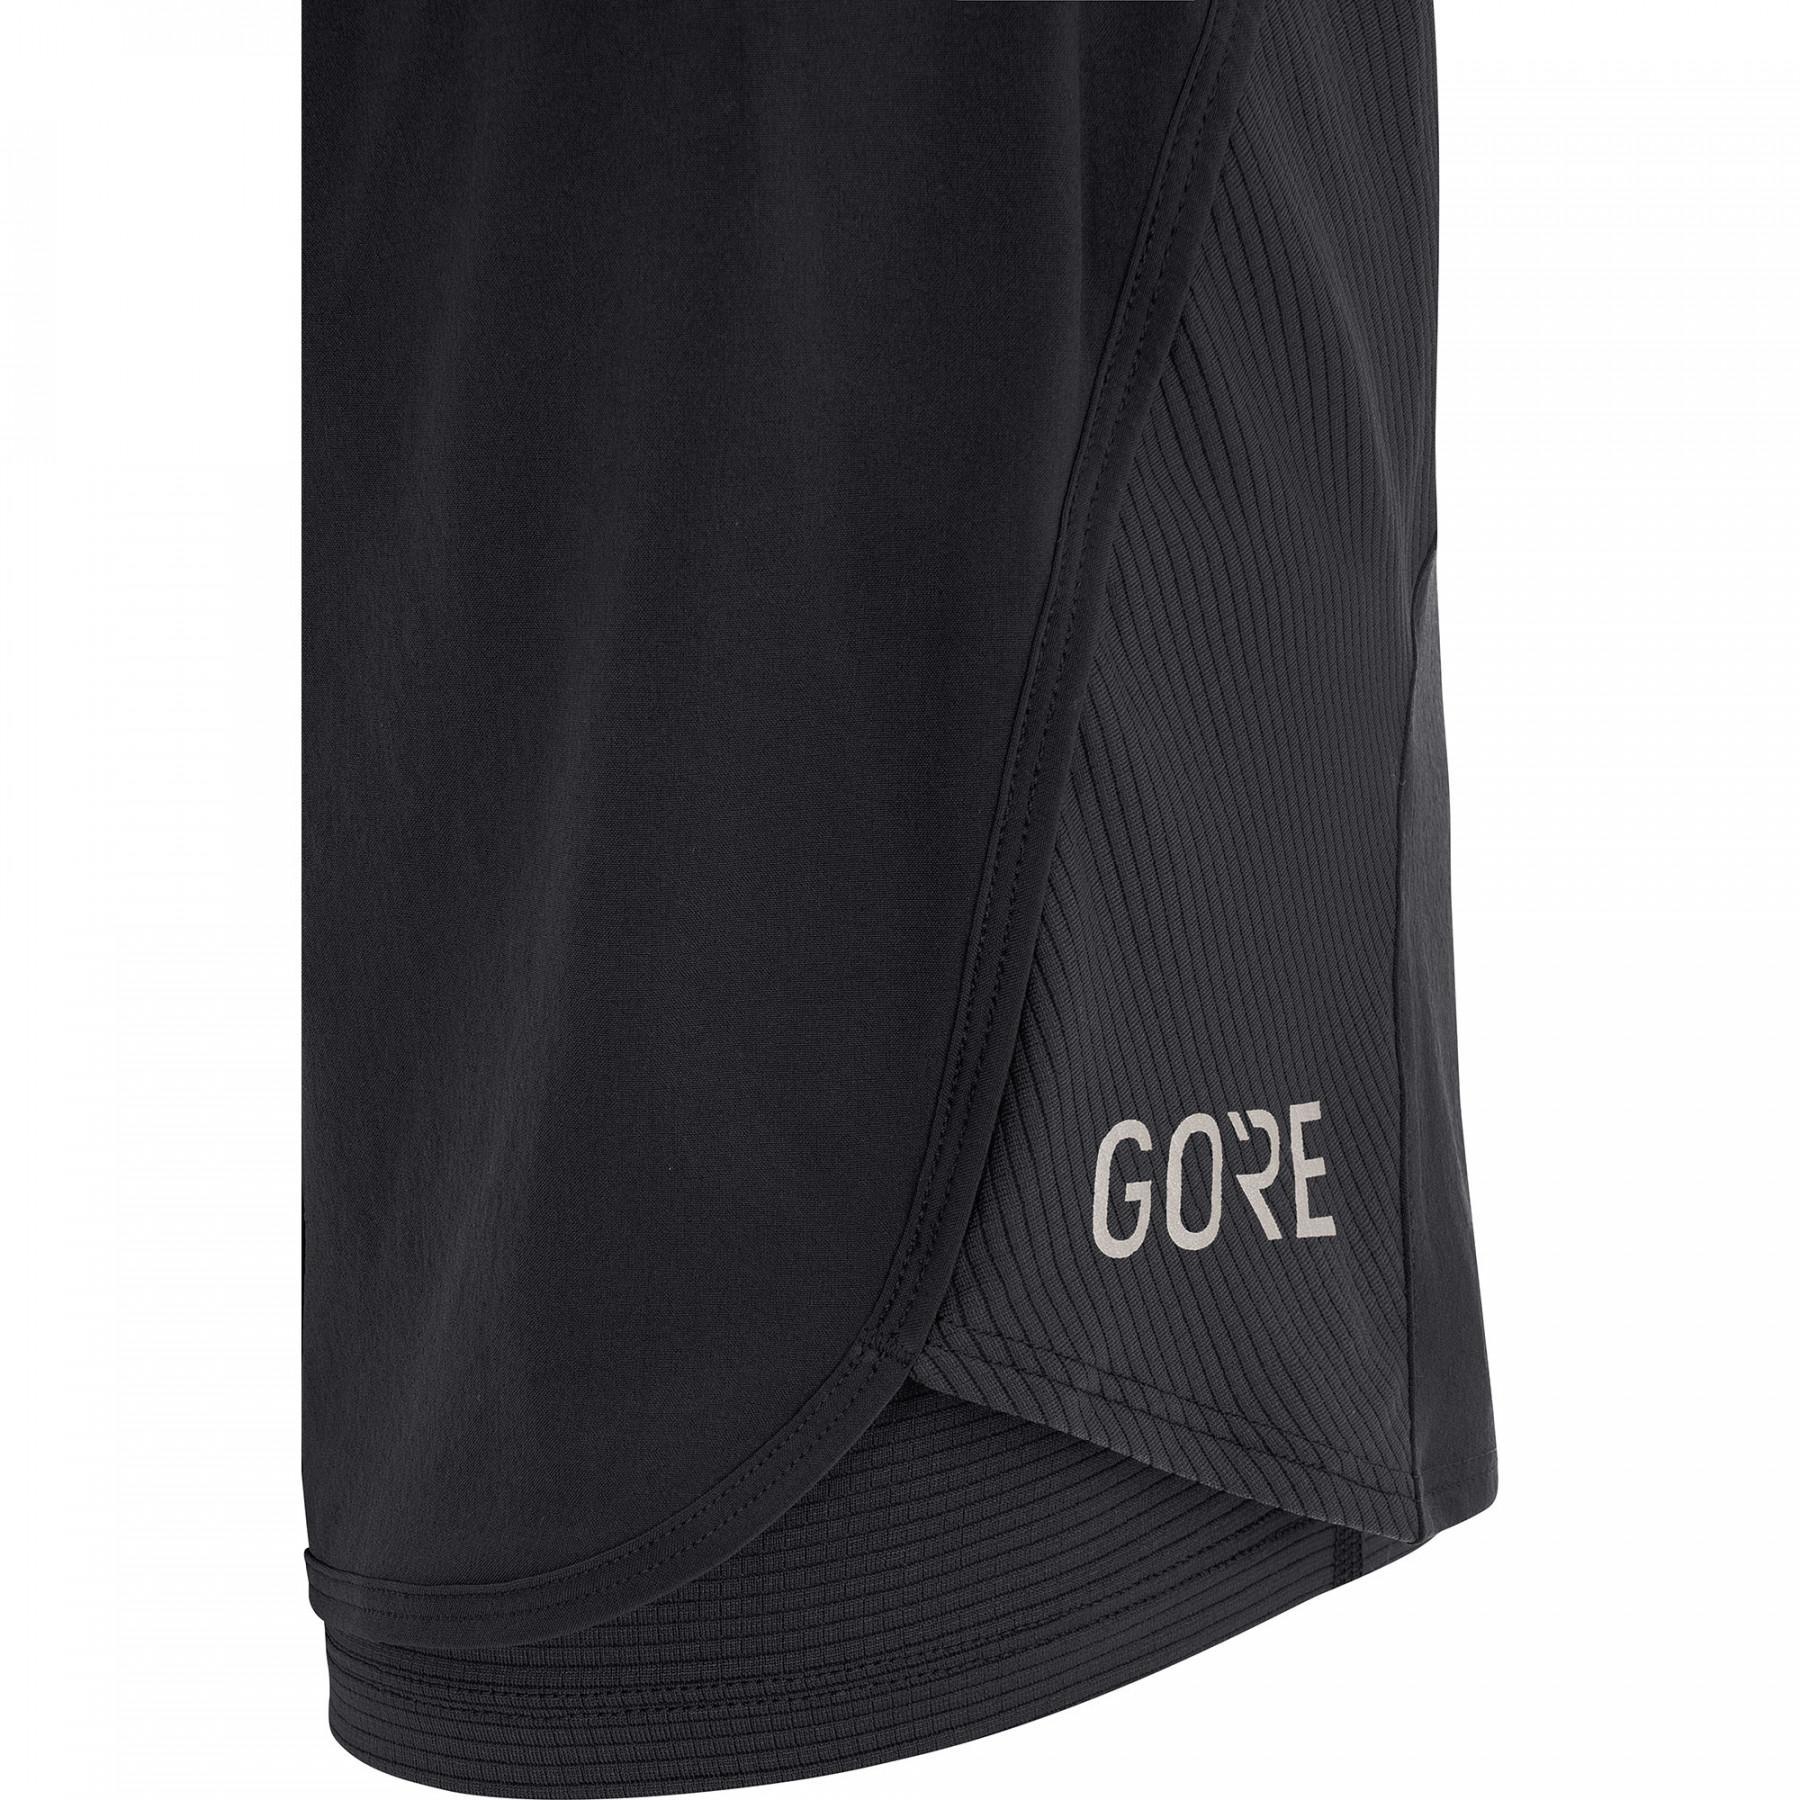 Pantalones cortos de mujer Gore R7 2in1